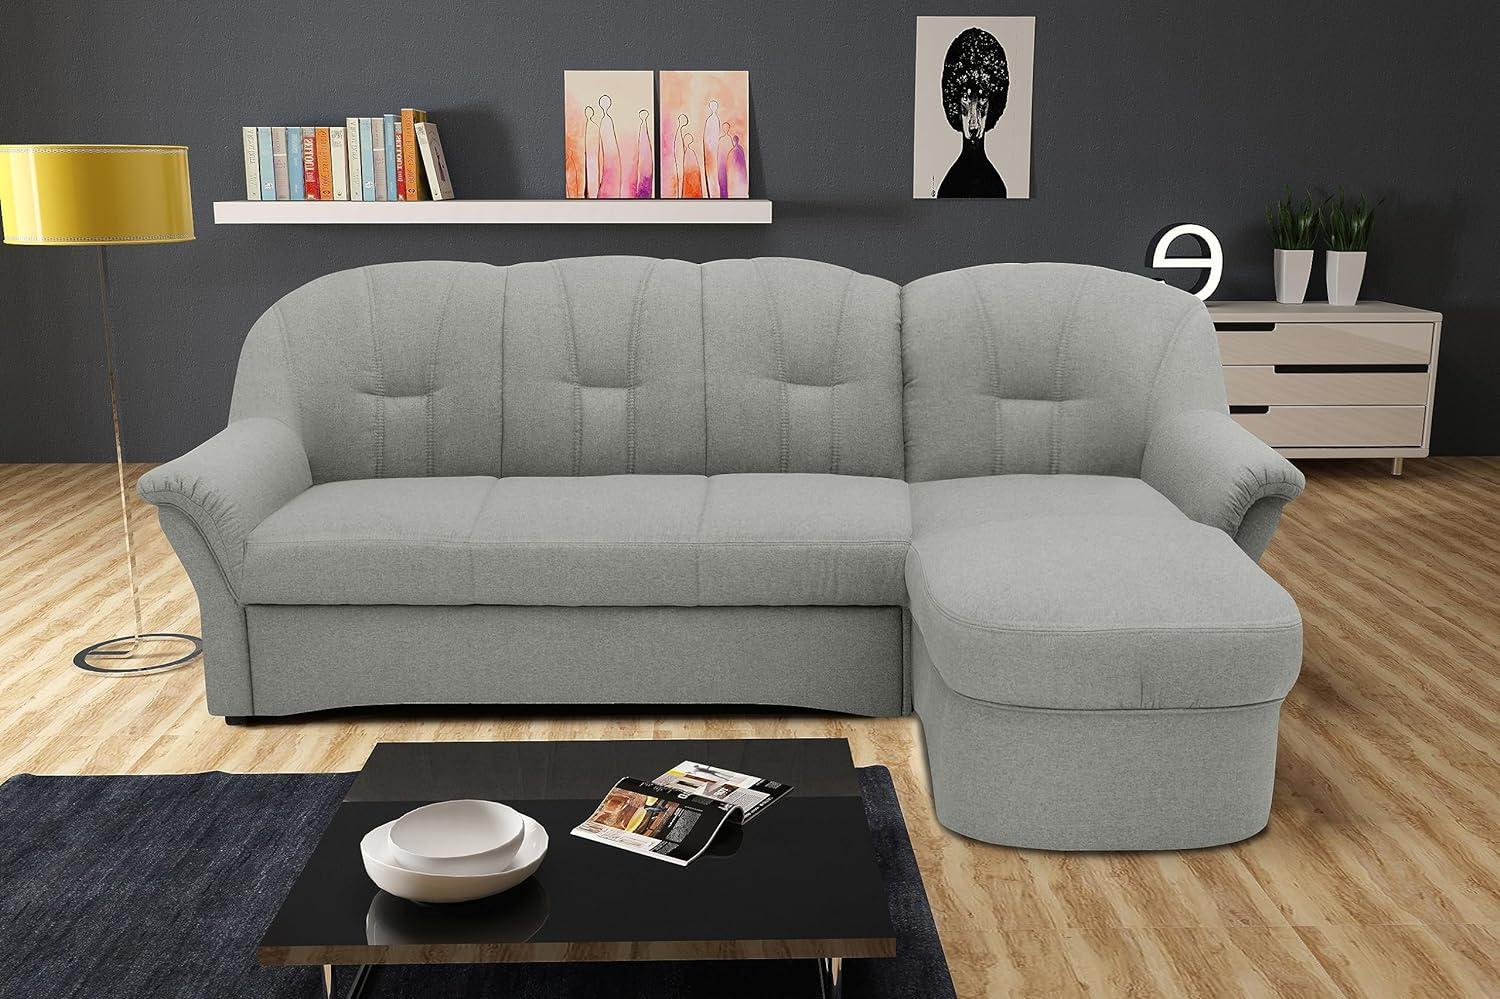 DOMO Collection Puno Ecksofa, Sofa in L-Form, Eckcouch, Sofa, Couch mit Longchair und Schlaffunktion, 233 x 142 cm, Polstermöbel in silber Bild 1